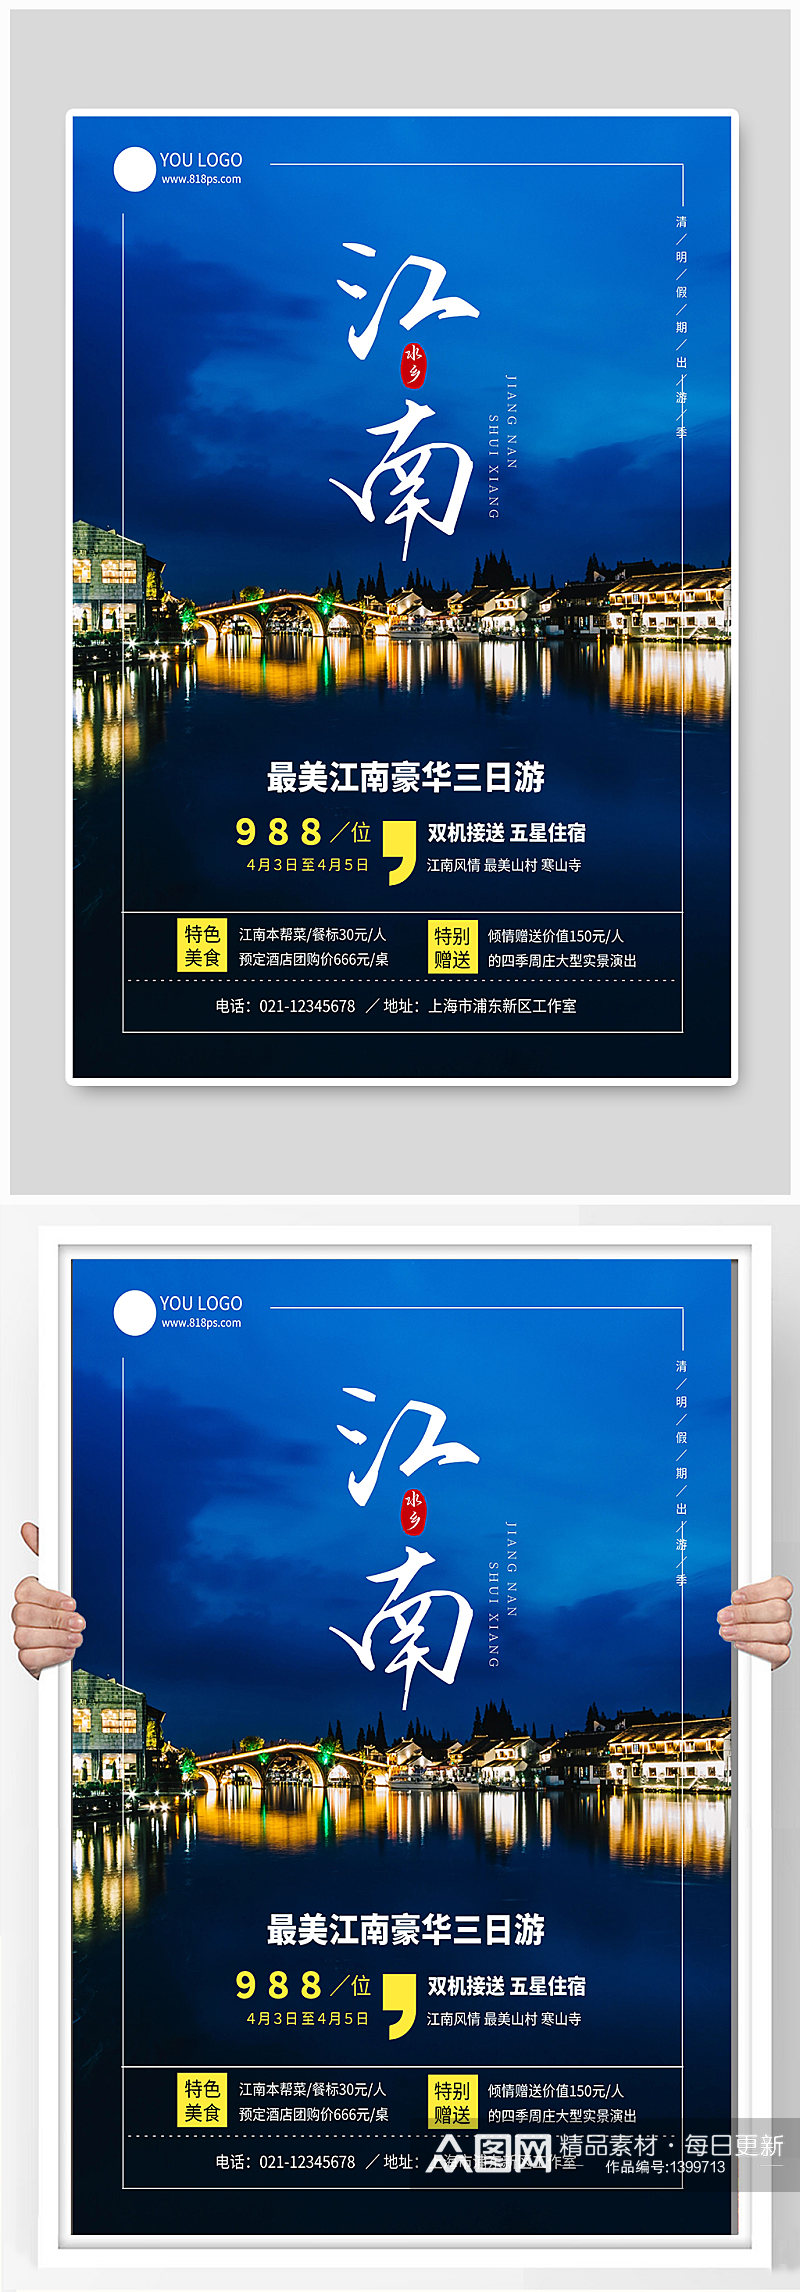 江南水乡宣传海报设计素材